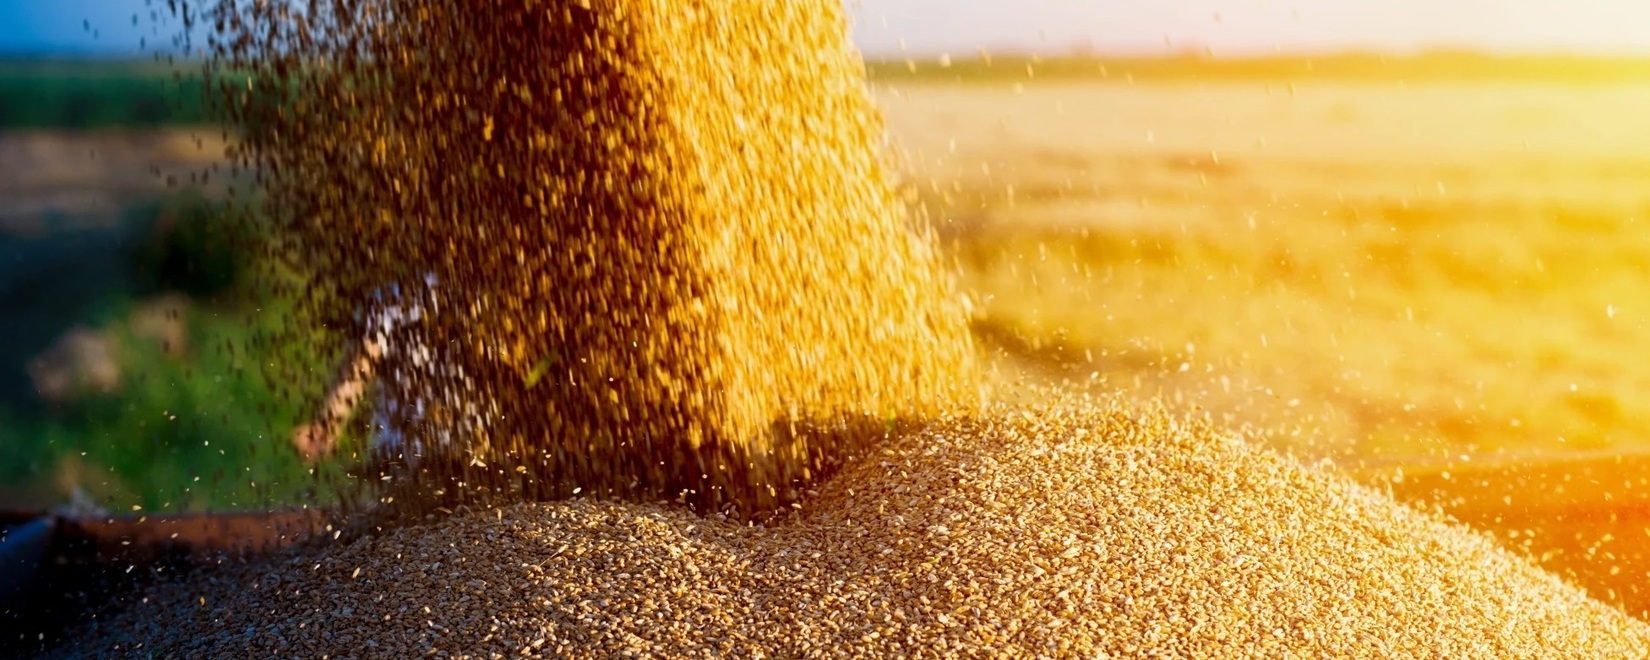 «Русагротранс» ожидает рекордного экспорта пшеницы в июле - Цены на российскую пшеницу растут как на внутреннем, так и на мировом рынках